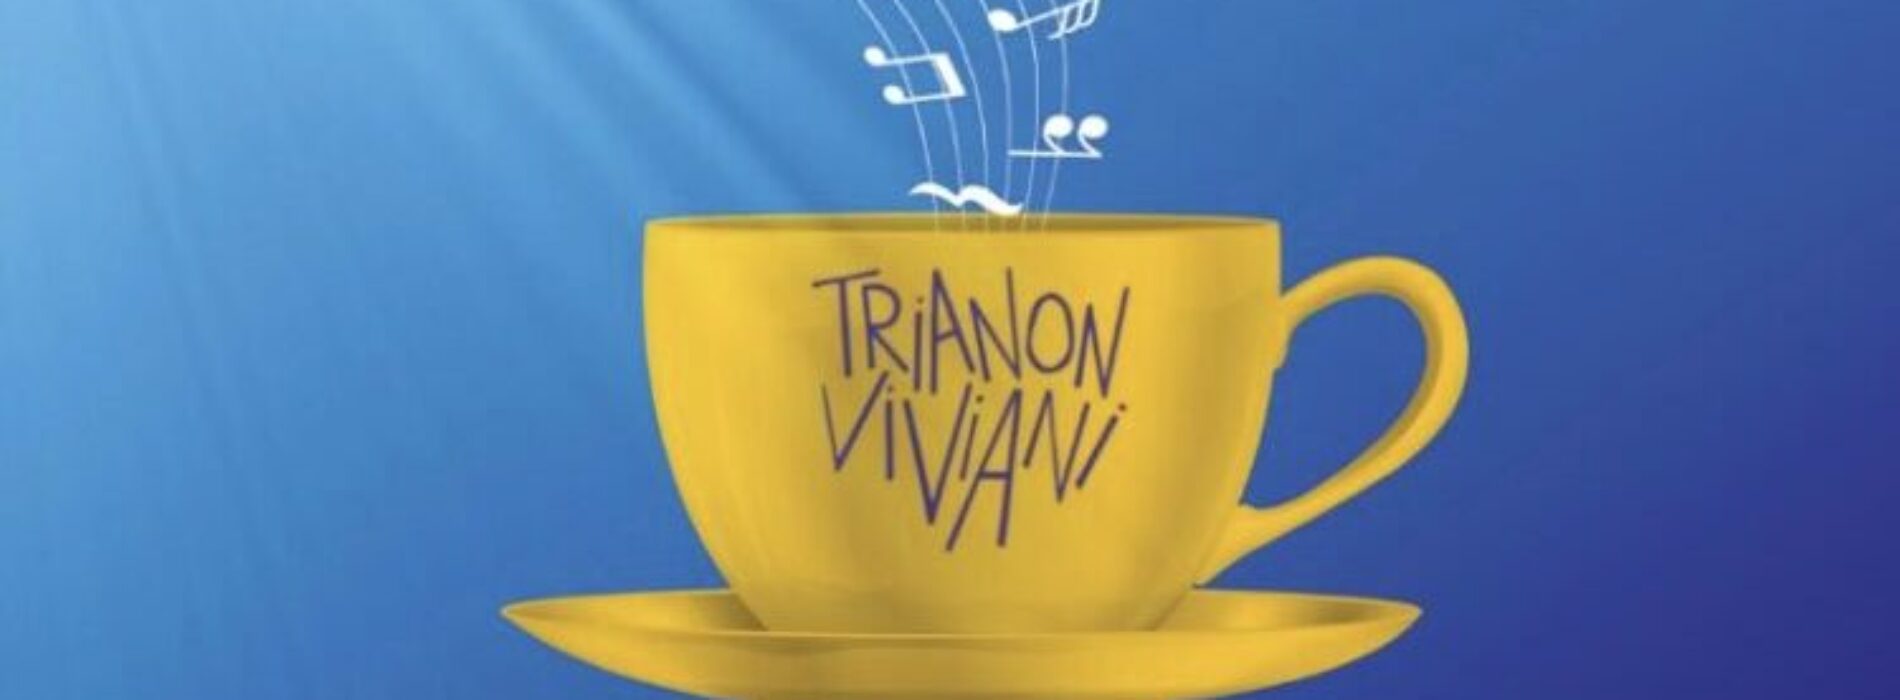 Scètate: il buongiorno musicale del Trianon Viviani è sul web